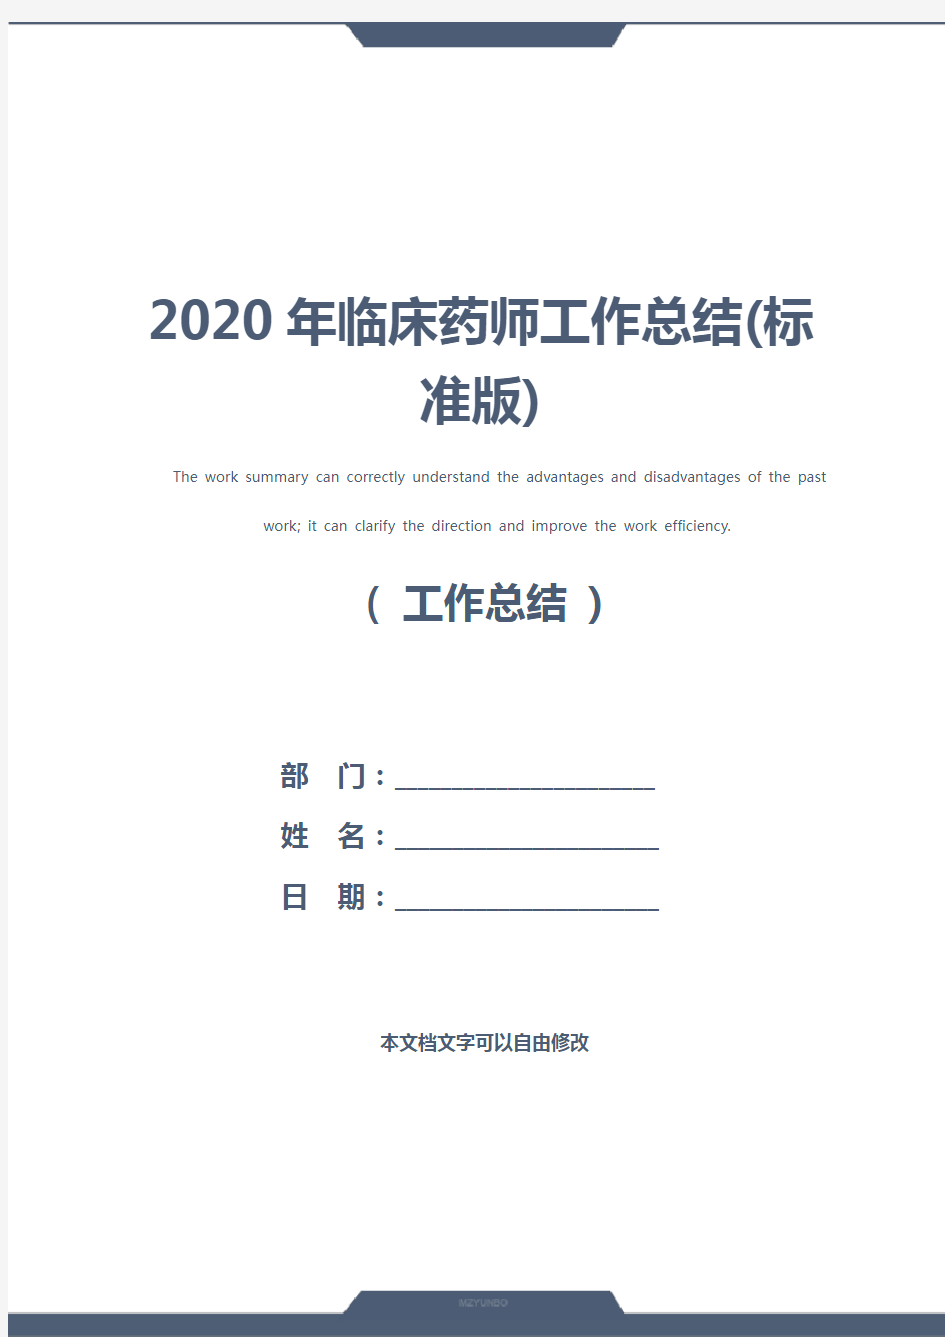 2020年临床药师工作总结(标准版)